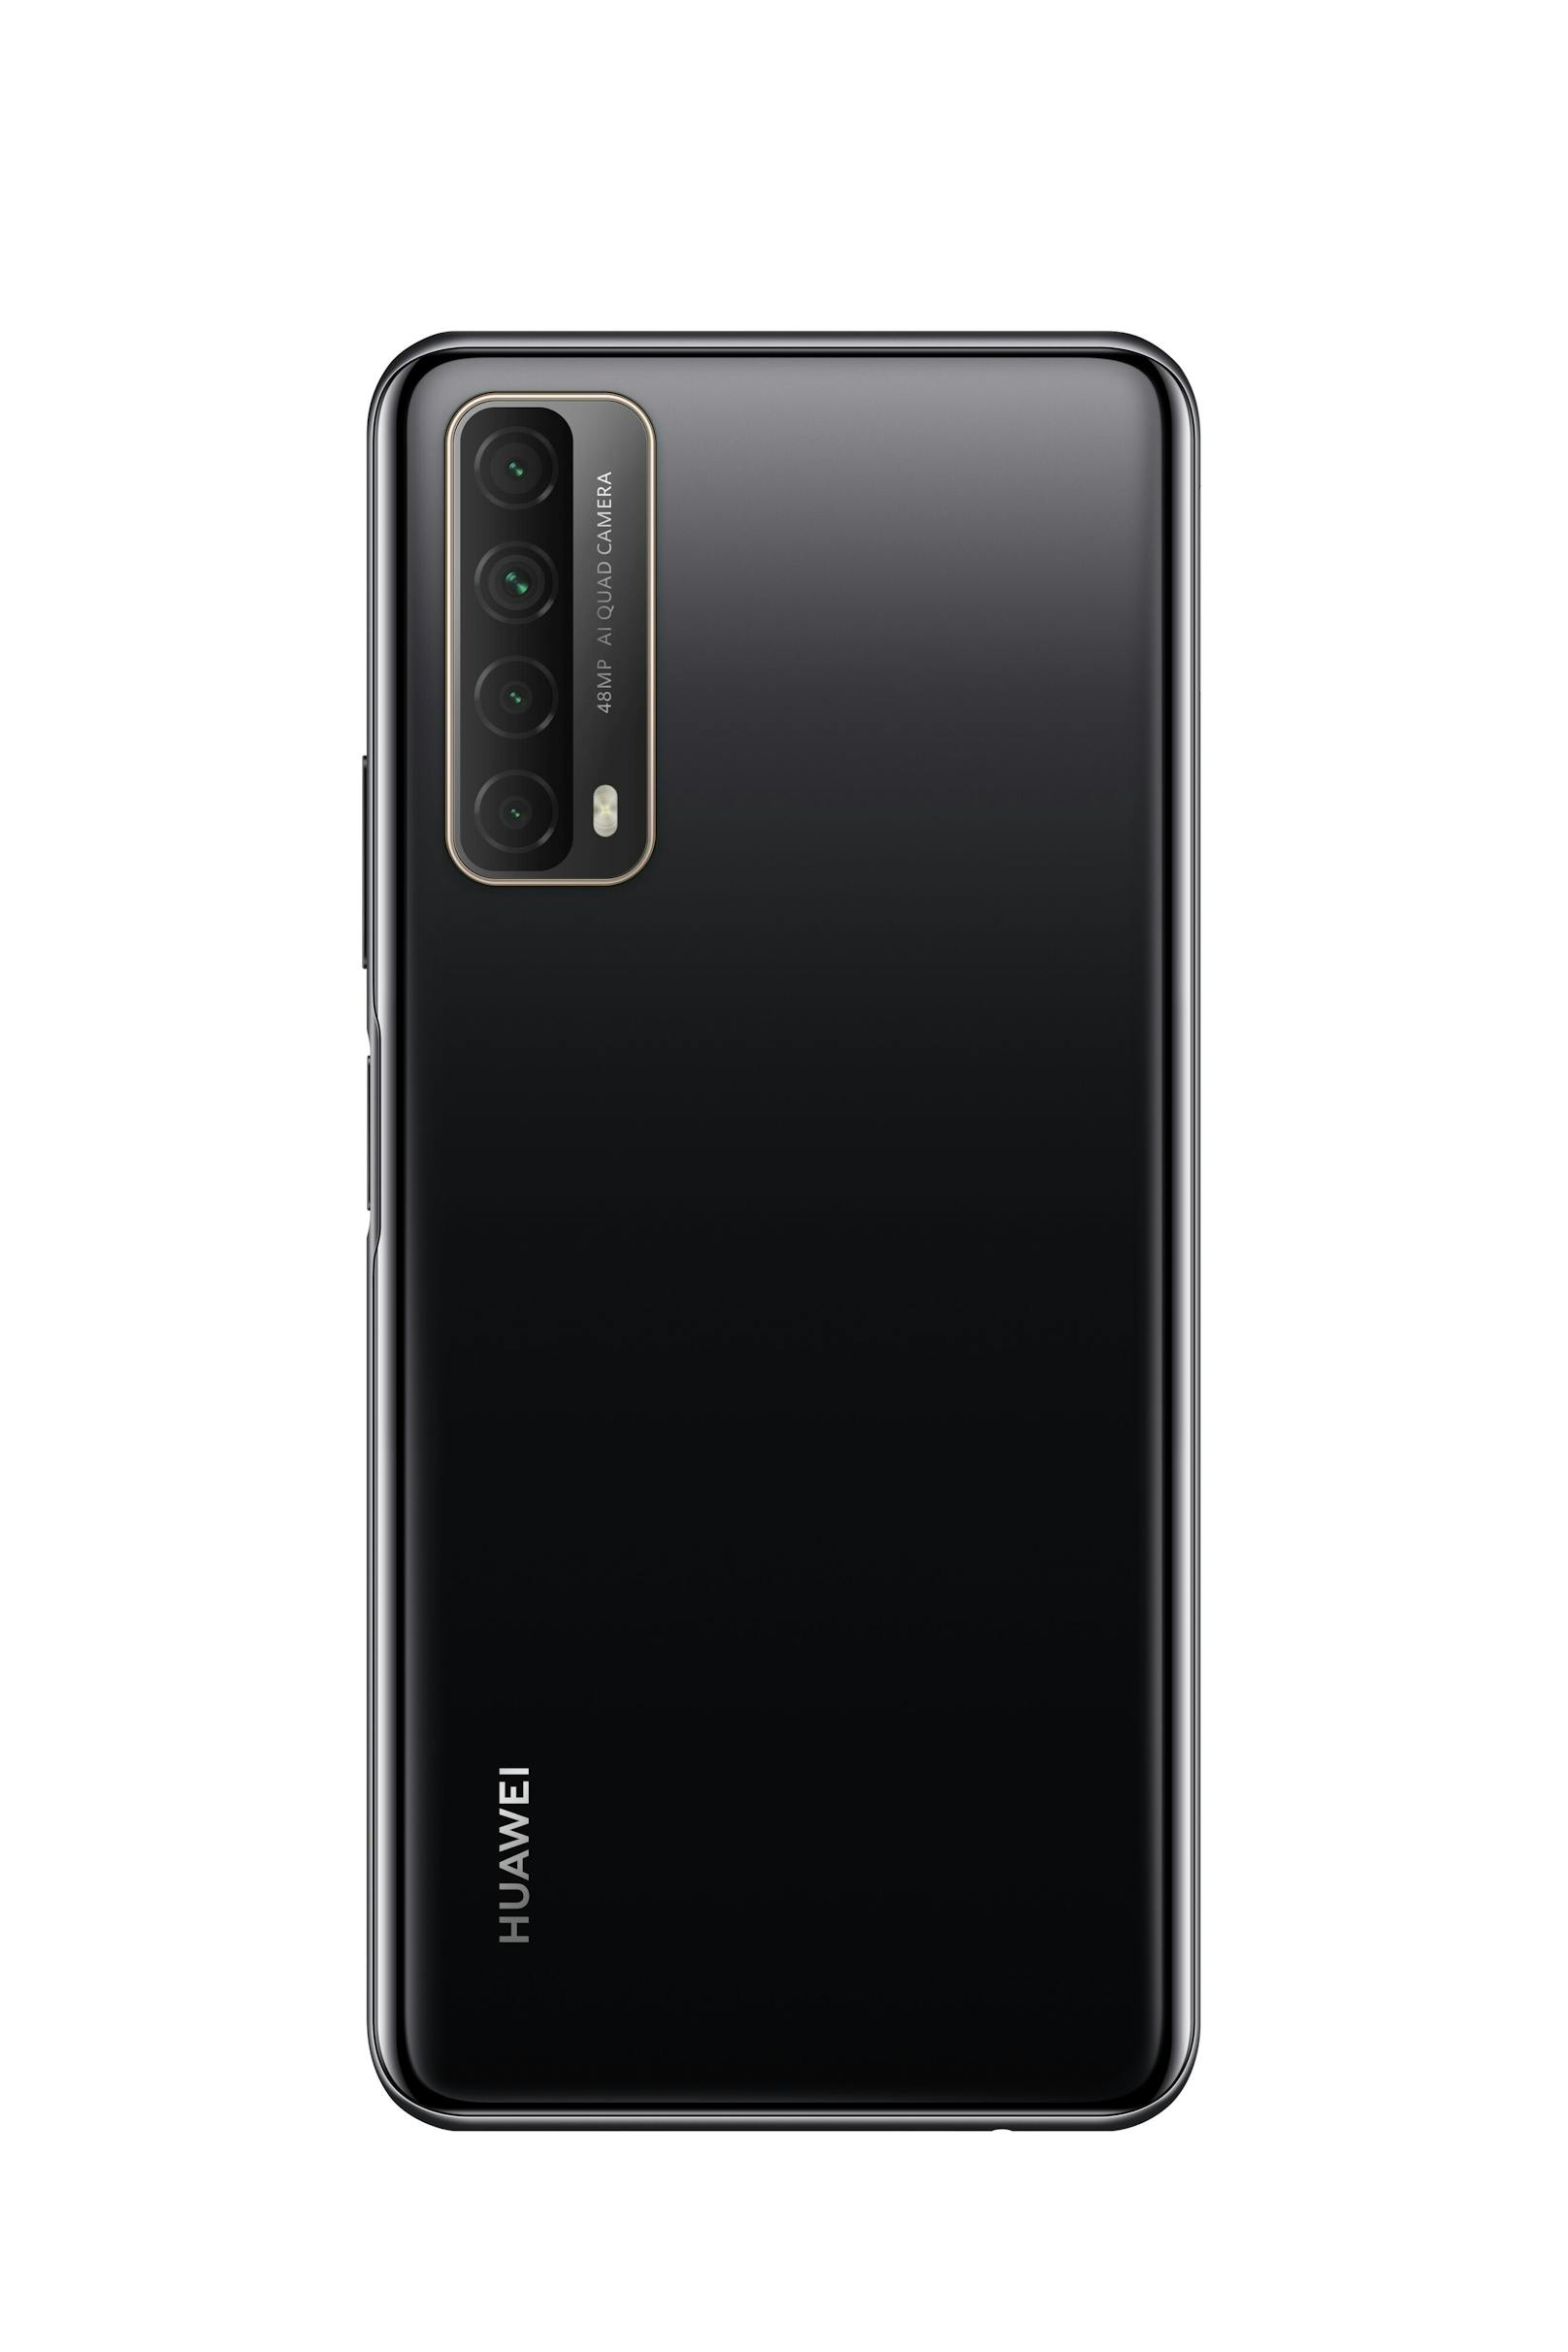 Es handelt sich mit 229 Euro um ein günstiges Handy mit dem Namen Huawei P smart 2021, das in der zweiten Oktoberhälfte in den Farben Schwarz, Gold und Grün im Handel erscheinen wird.